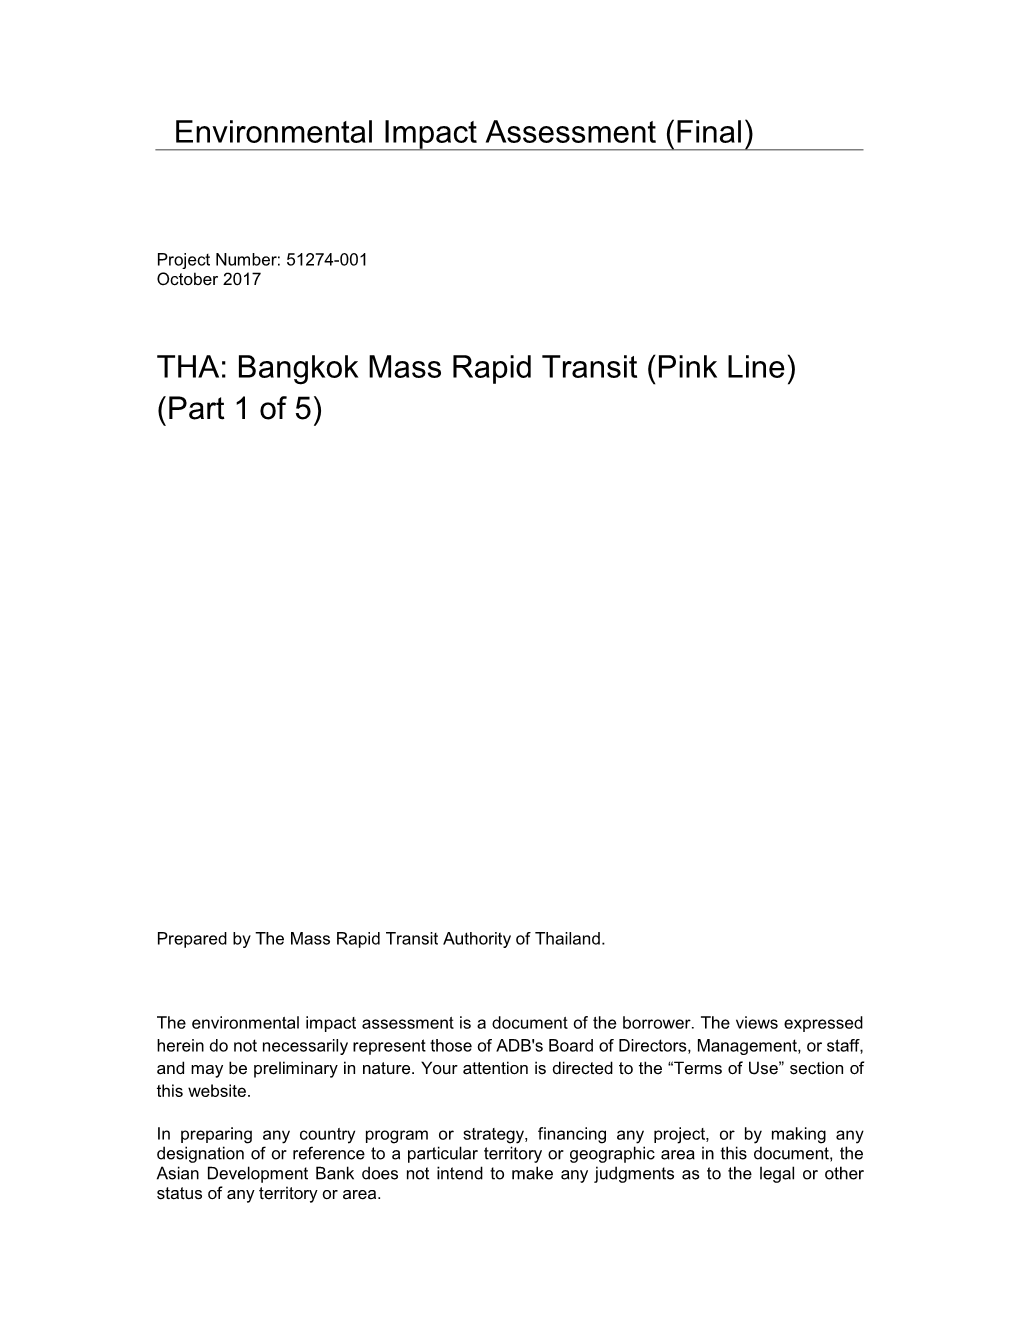 Environmental Impact Assessment (Final) THA: Bangkok Mass Rapid